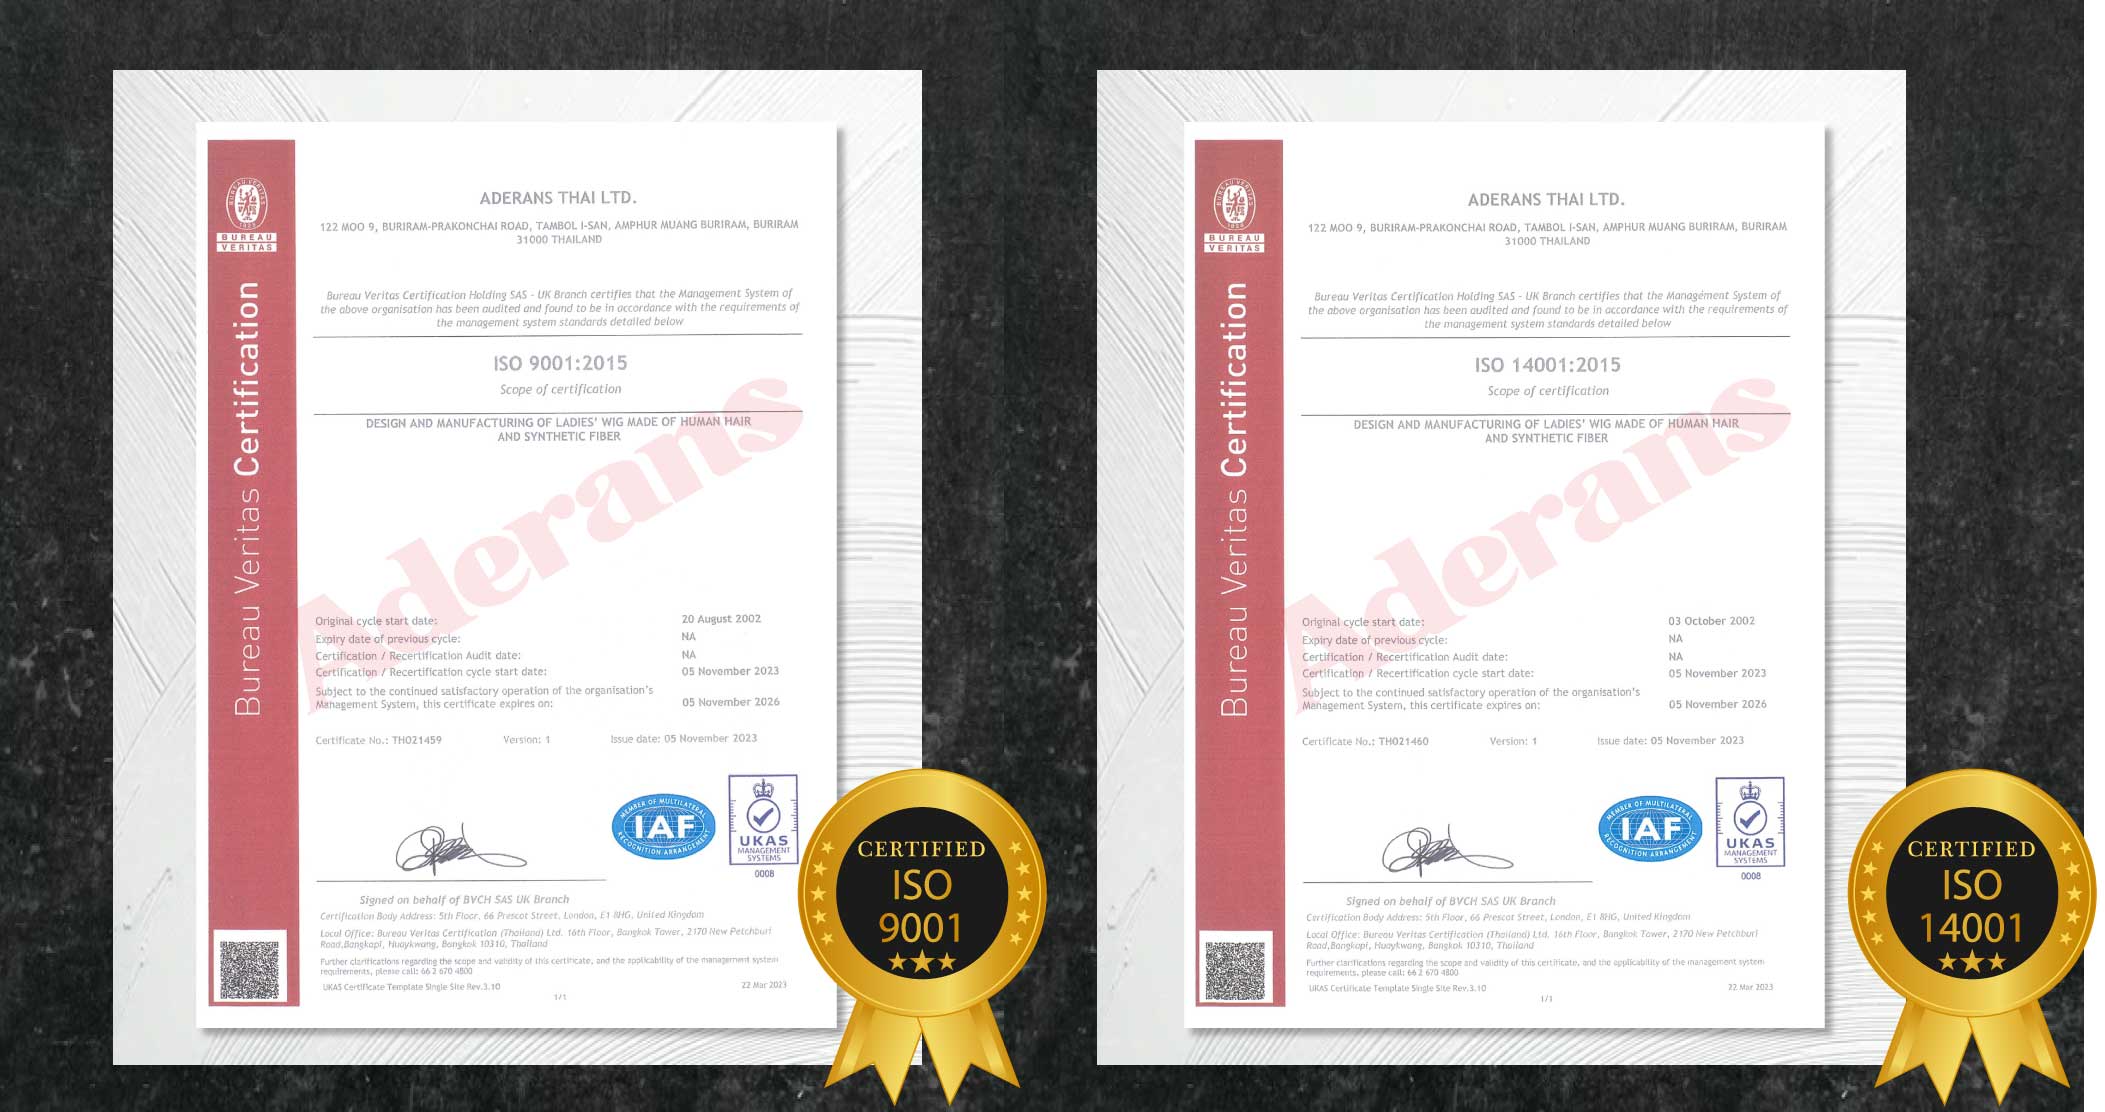 愛德蘭絲假髮推薦工廠通過認證ISO9001 ISO14001